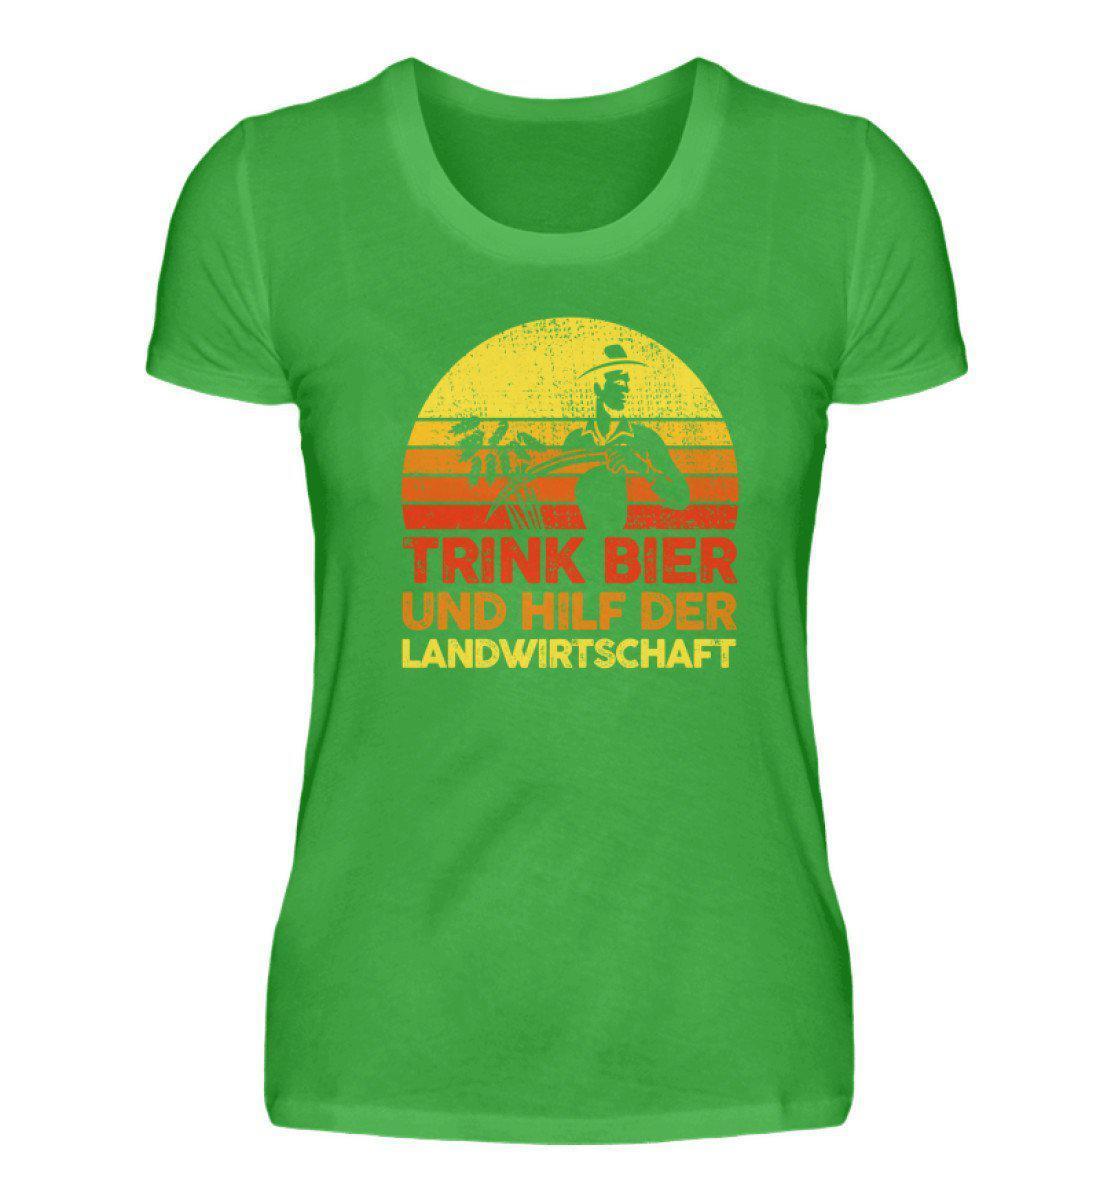 Trink Bier hilf Landwirtschaft Retro · Damen T-Shirt-Damen Basic T-Shirt-Green Apple-S-Agrarstarz